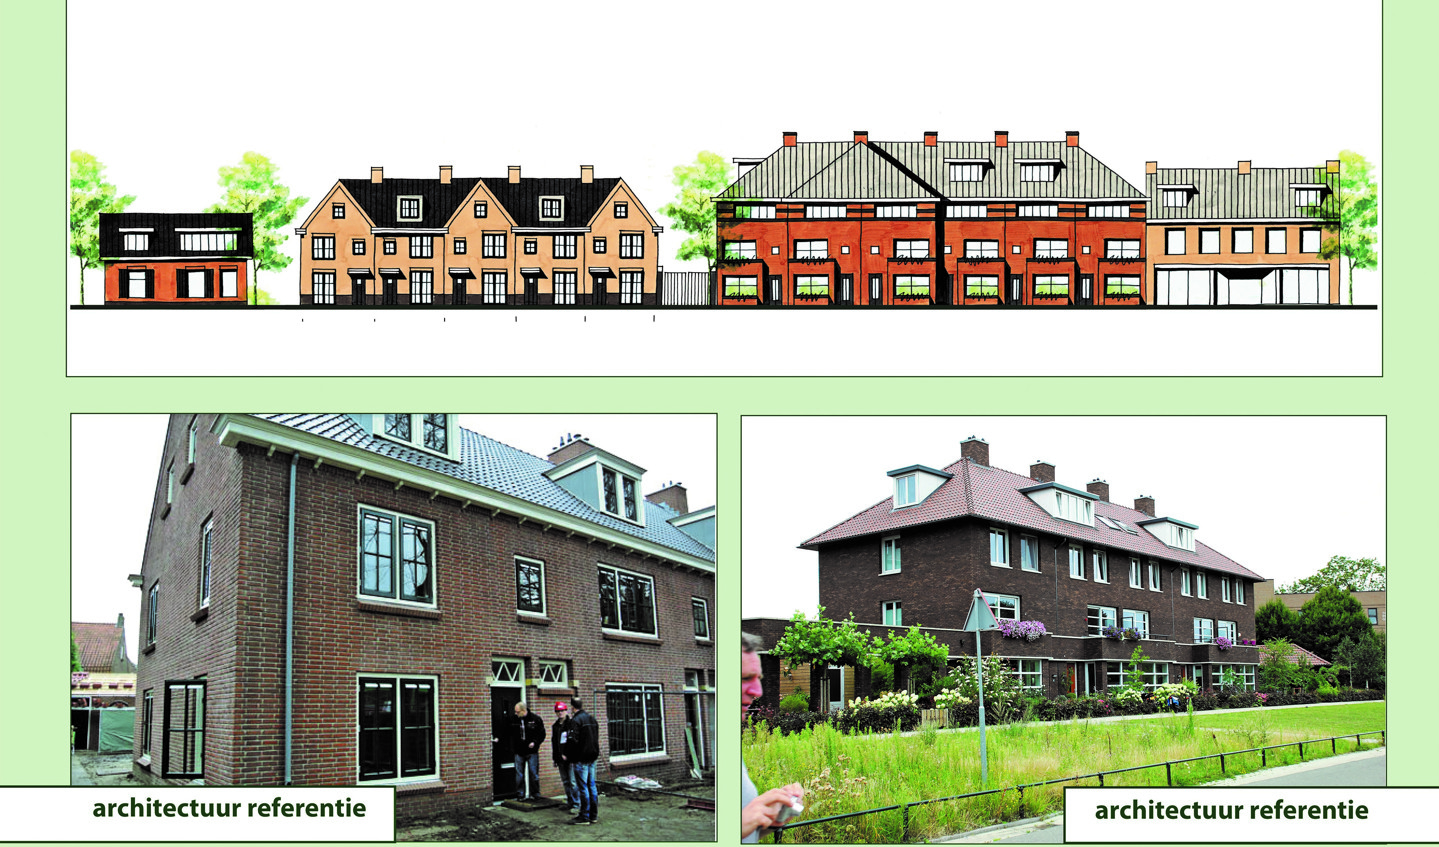 Beeld van de geplande woningen: 2e links het beeld van de 2 woningen van 2 bouwlagen met kap en de 3e van links, het beeld van de woningen van 3 bouwlagen met kap.